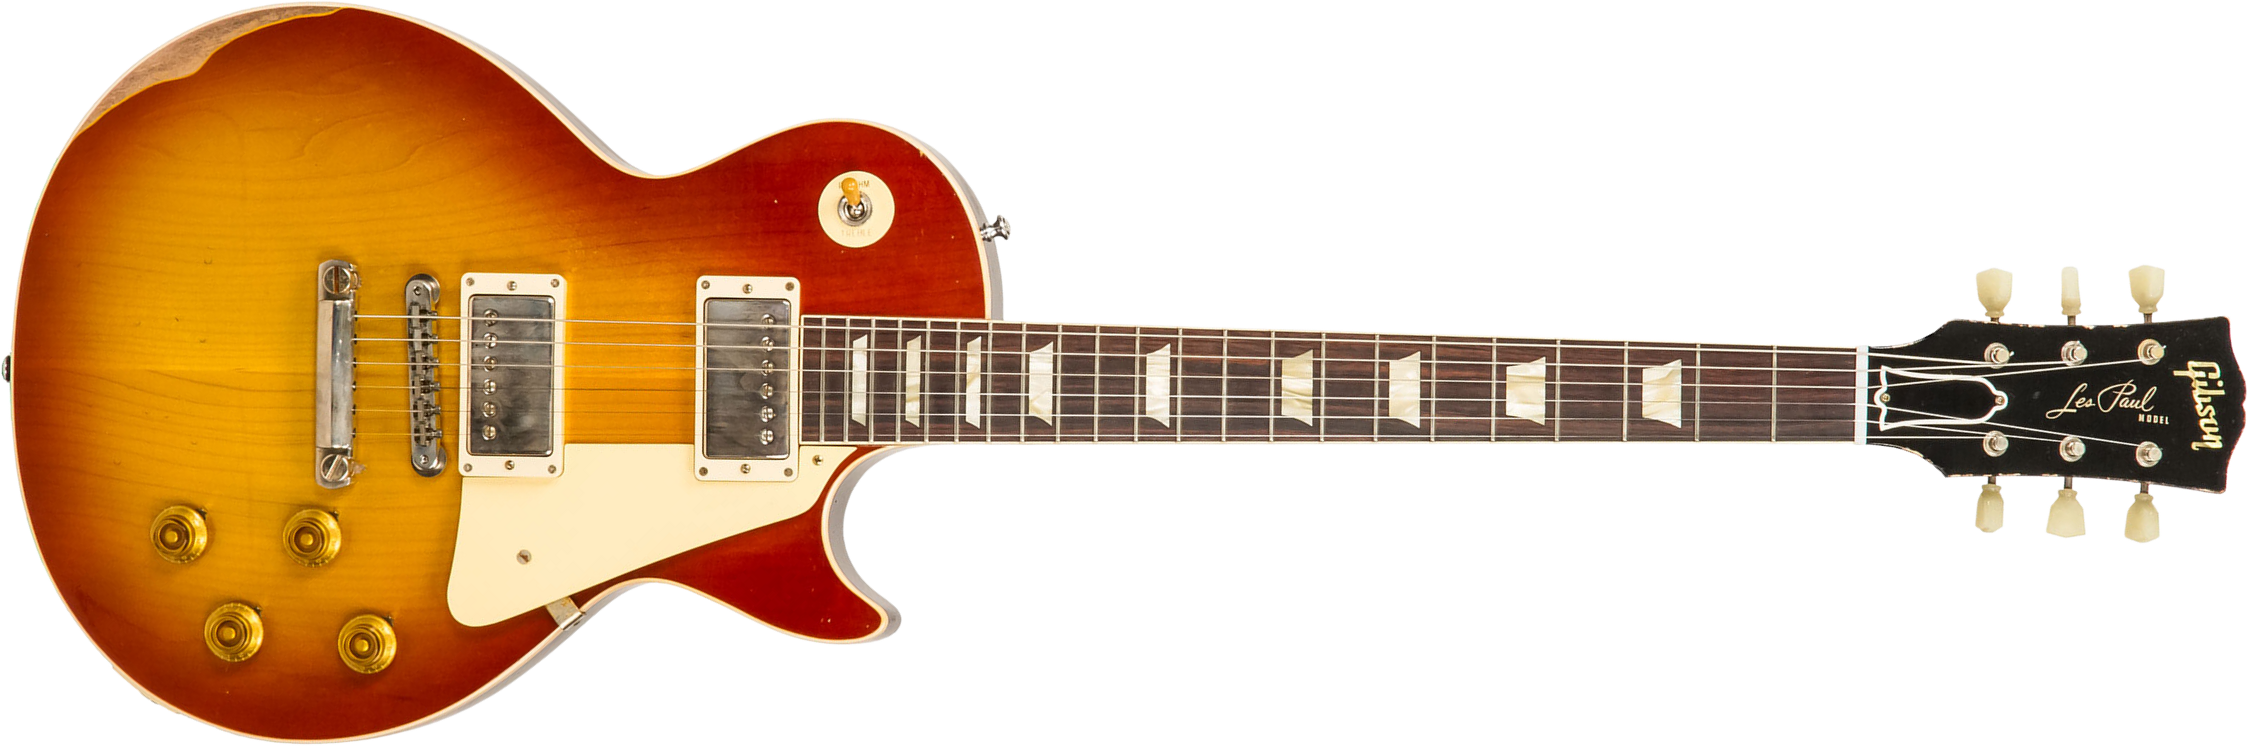 Gibson Custom Shop M2m Les Paul Standard 1958 2h Ht Rw - Heavy Aged '58 Burst - Guitarra eléctrica de corte único. - Main picture